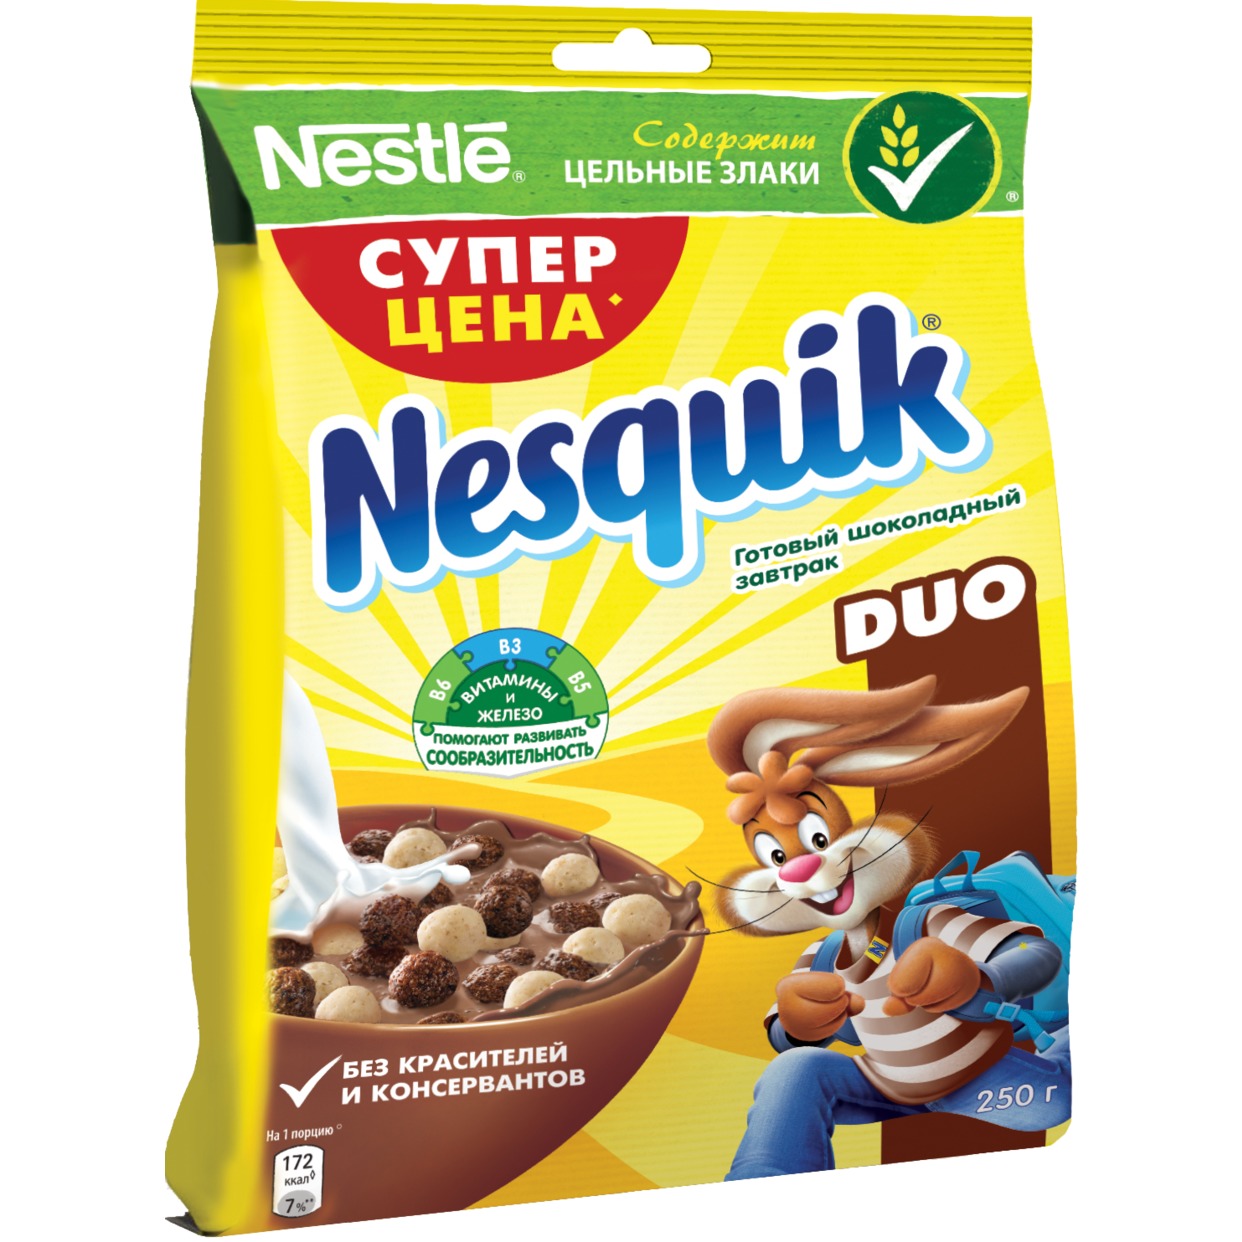 Готовый завтрак "Nesquik" Duo Шоколадный 250г по акции в Пятерочке